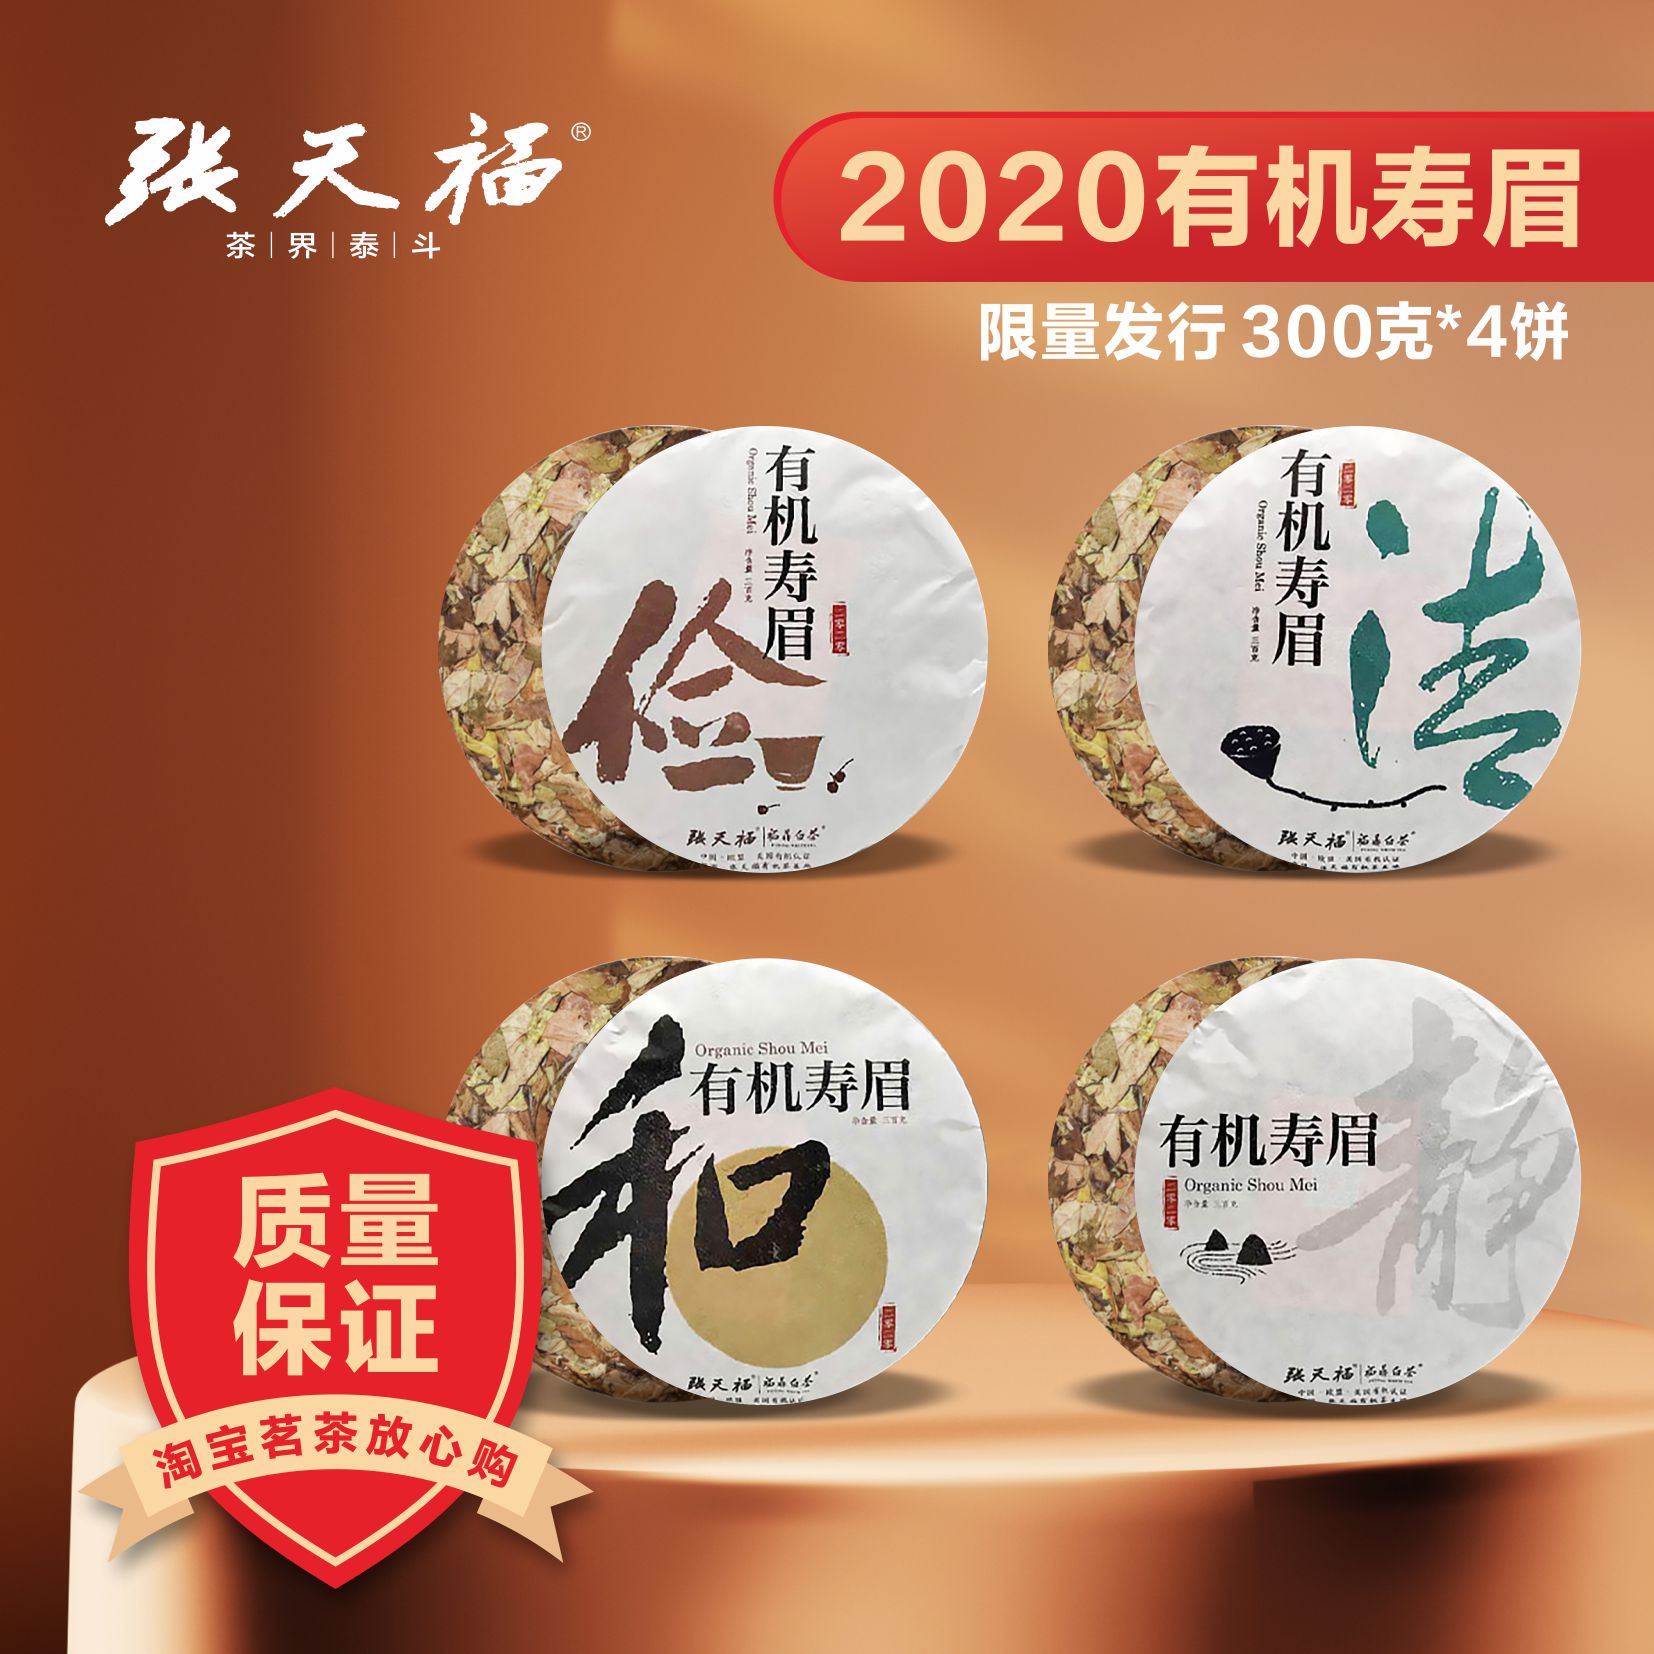 张天福2020年俭清和静枣香福鼎有机寿眉白茶300克*4饼礼盒套装